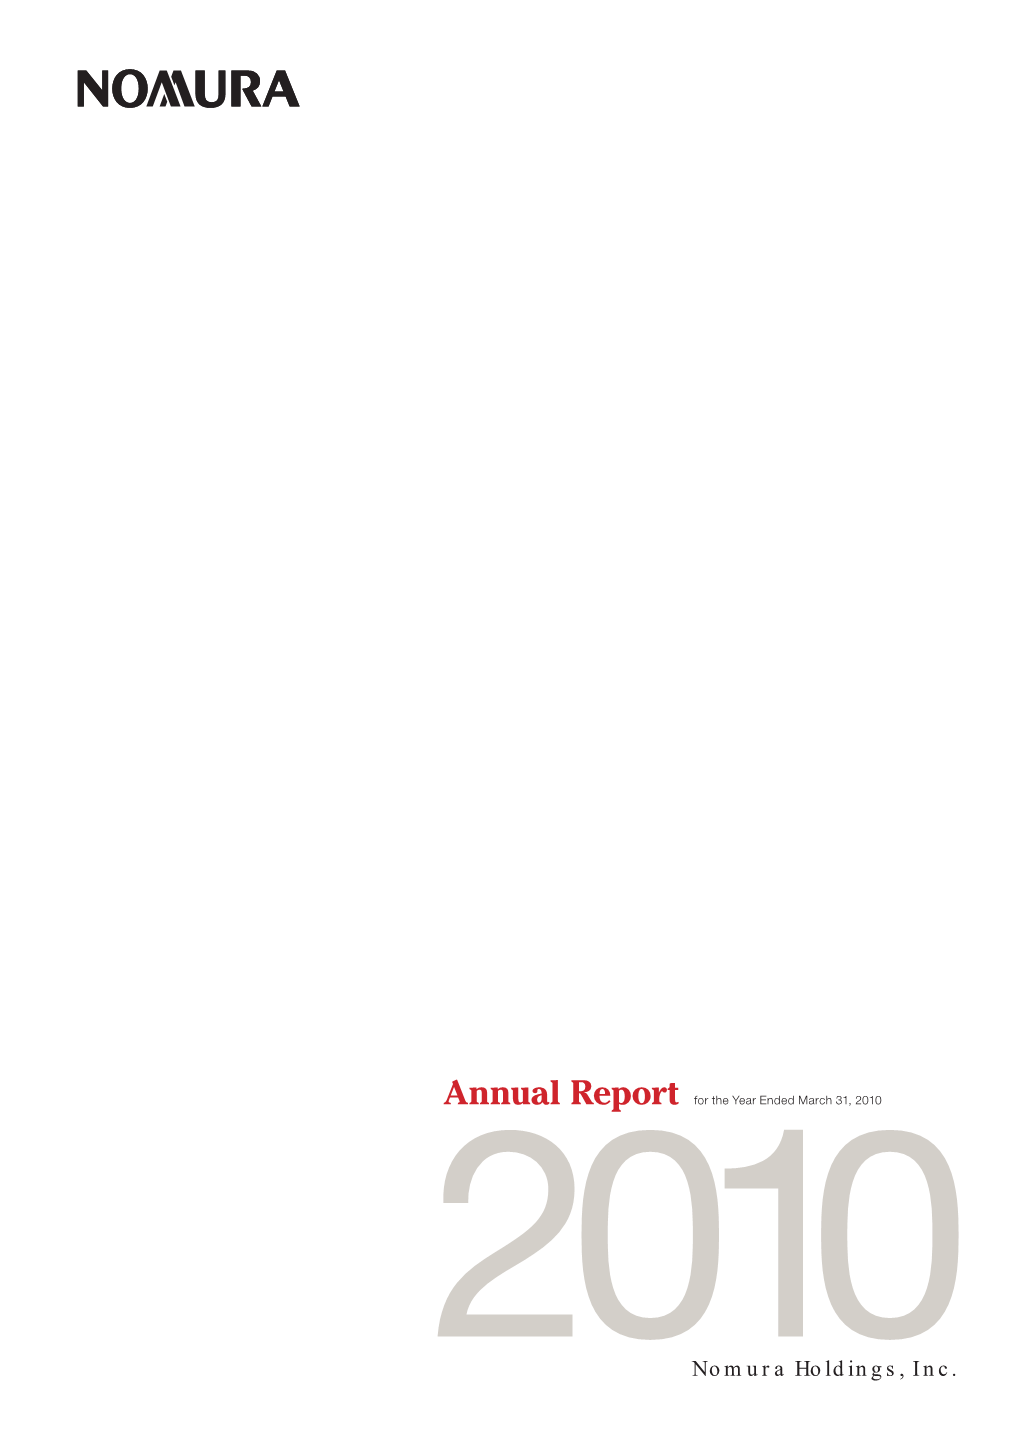 Nomura Holdings,Inc. Annual Report 2010 (PDF)